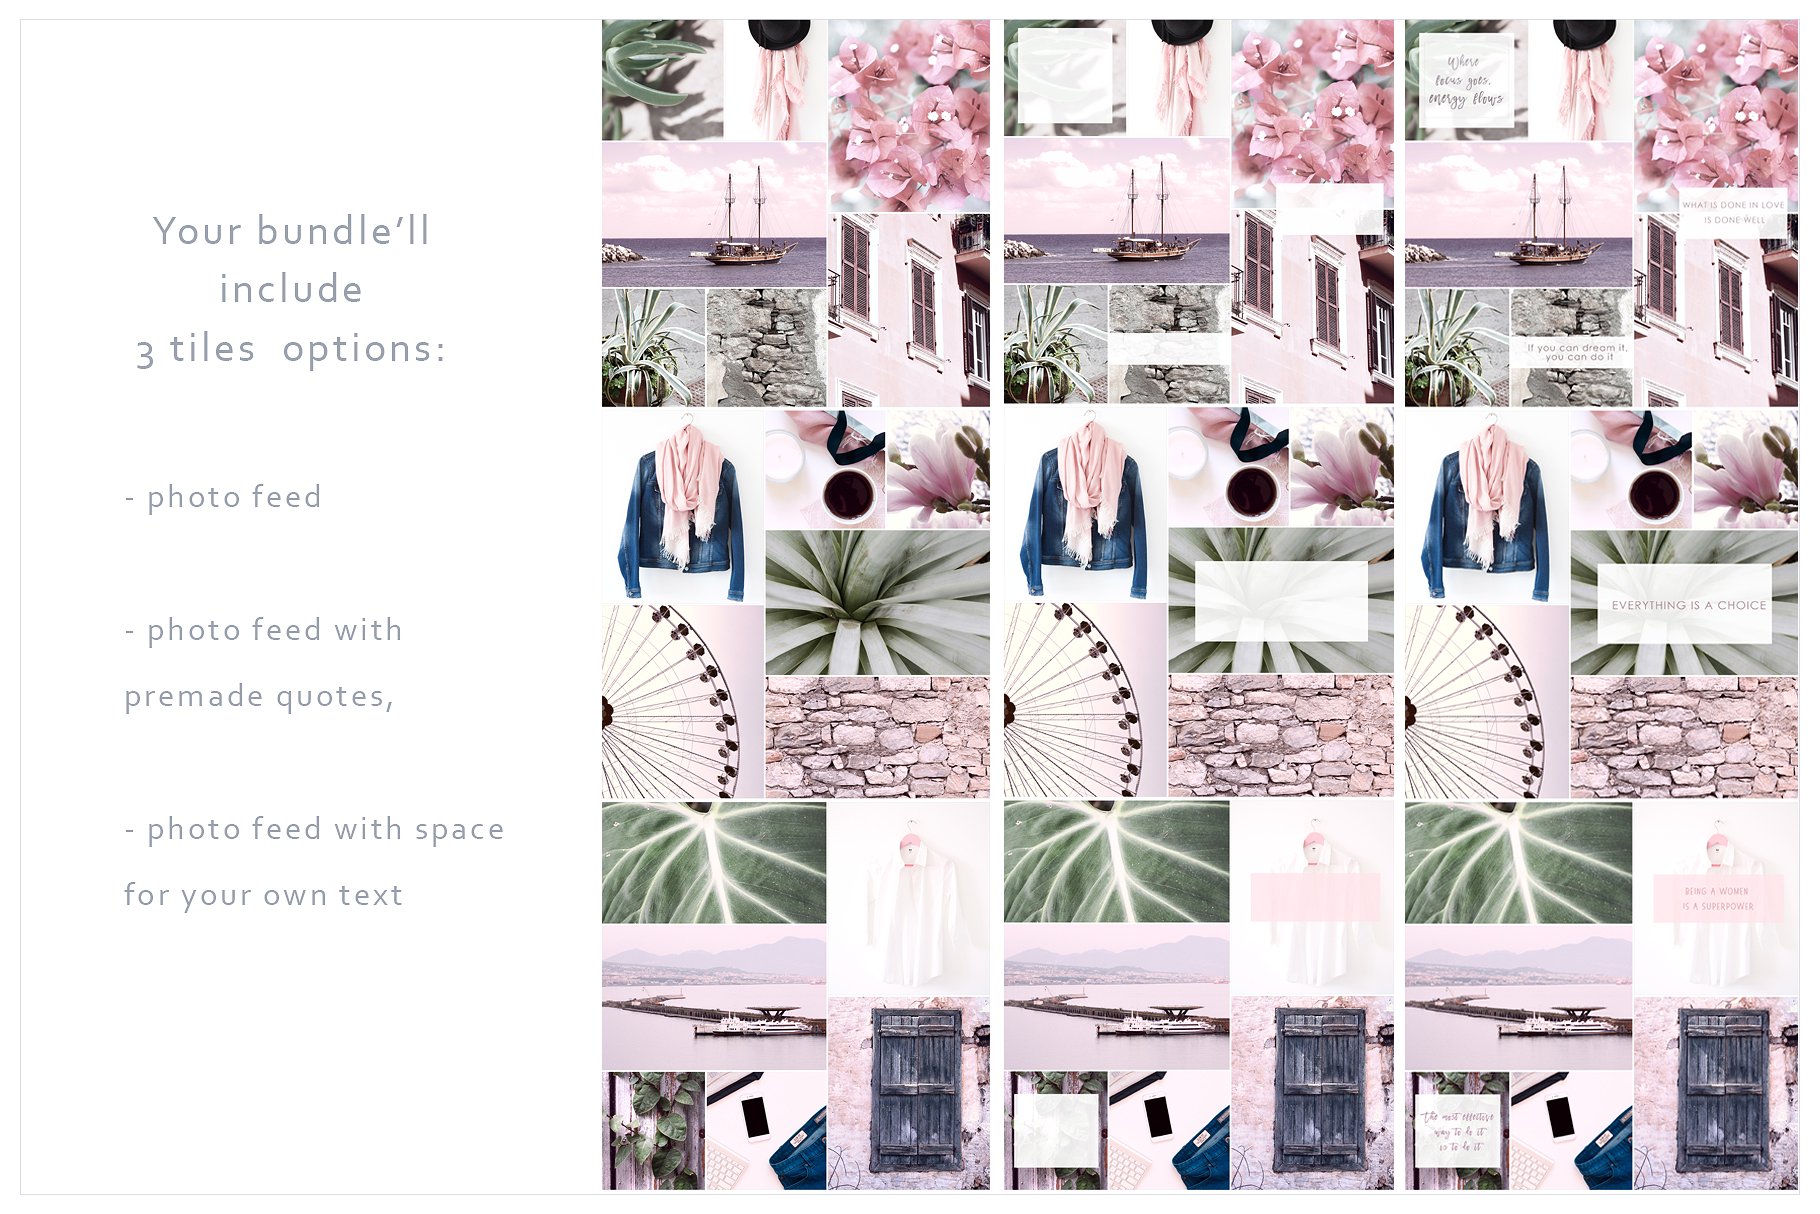 Instagram标题贴图设计素材包 Instagram Tiles Bundle #3插图(3)